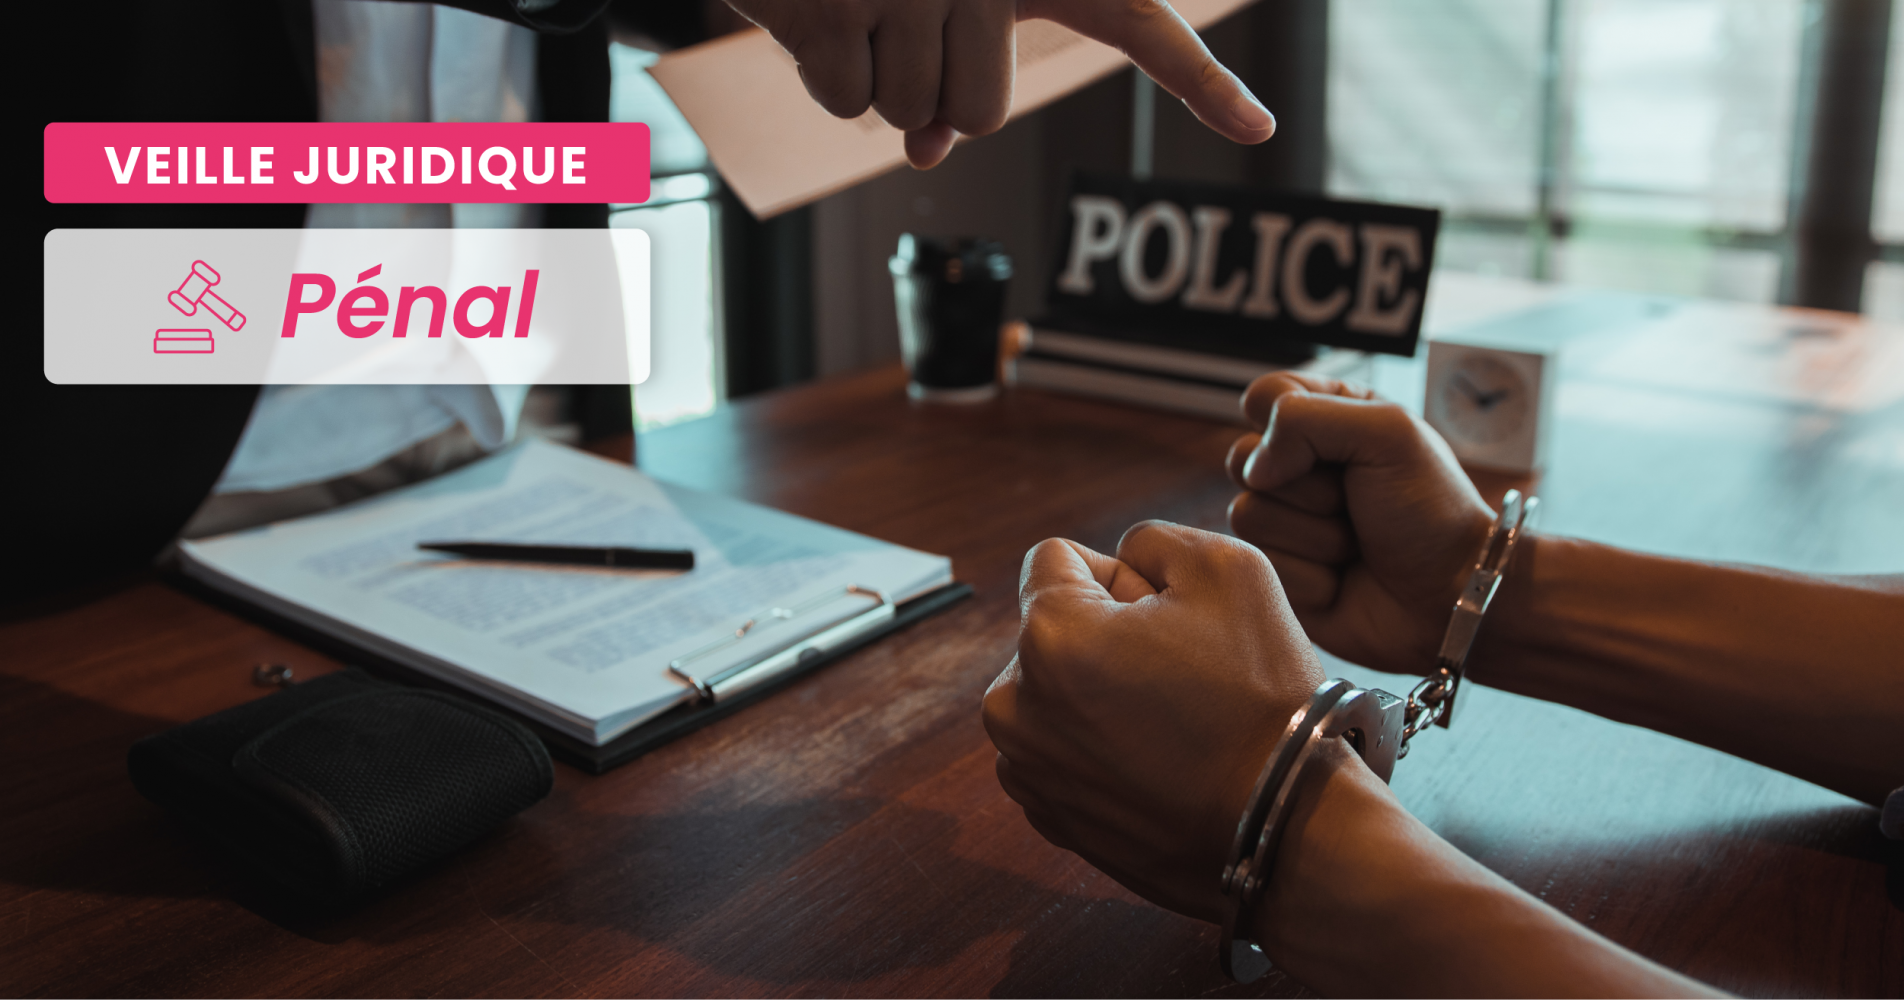 PÉNAL – Même privative de liberté, la peine inférieure à 10 ans prononcée pour un viol et des violences, aggravés, reste une peine correctionnelle